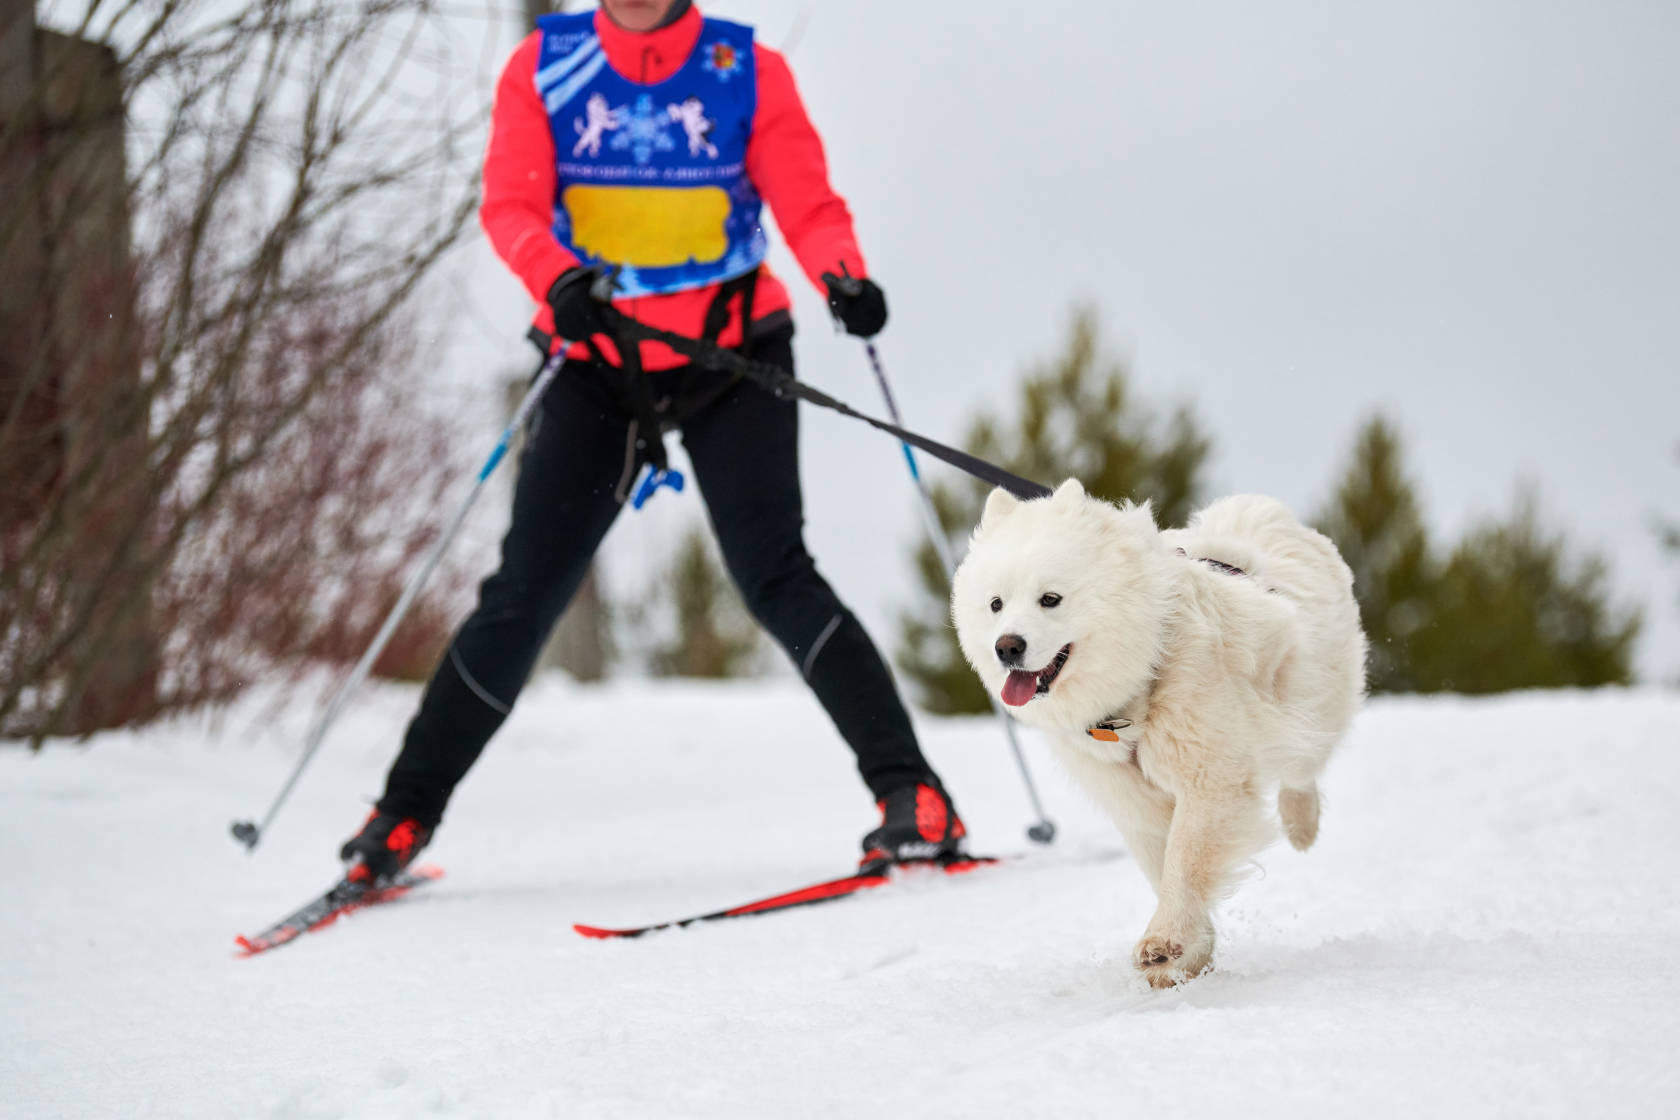 vedtage Forholdsvis Løb På ski med hunden - tips og råd | Zookjeden Buddy